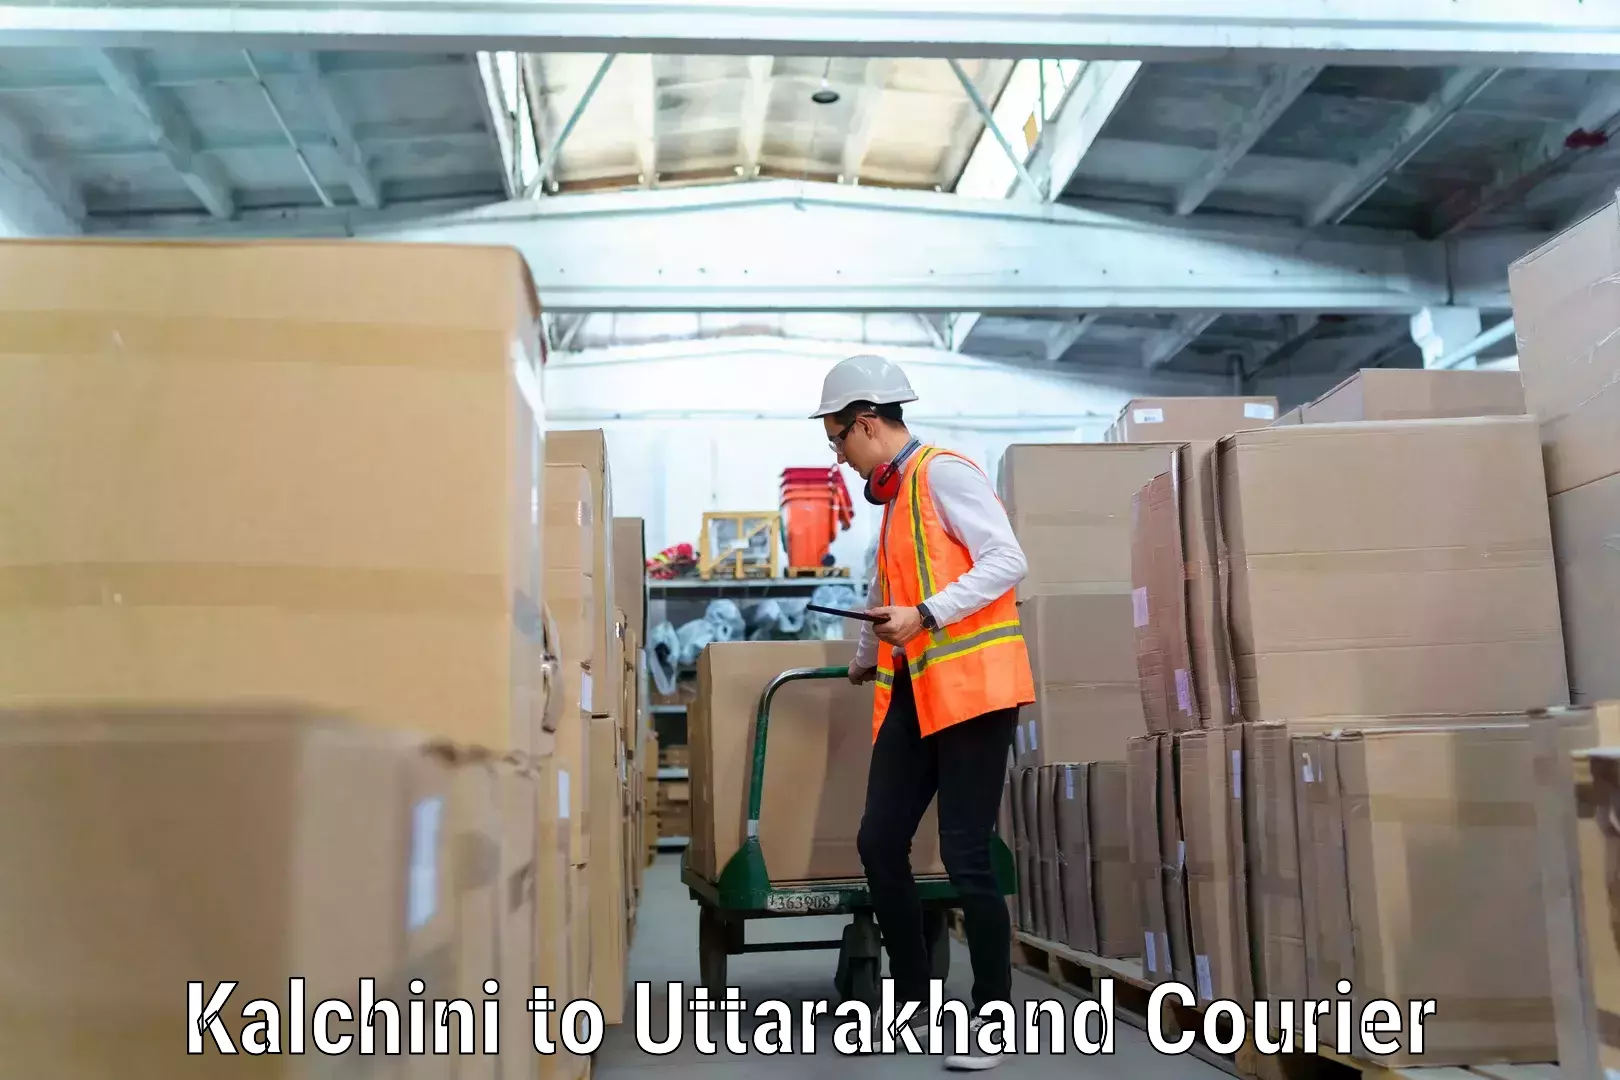 Furniture moving specialists Kalchini to Uttarakhand